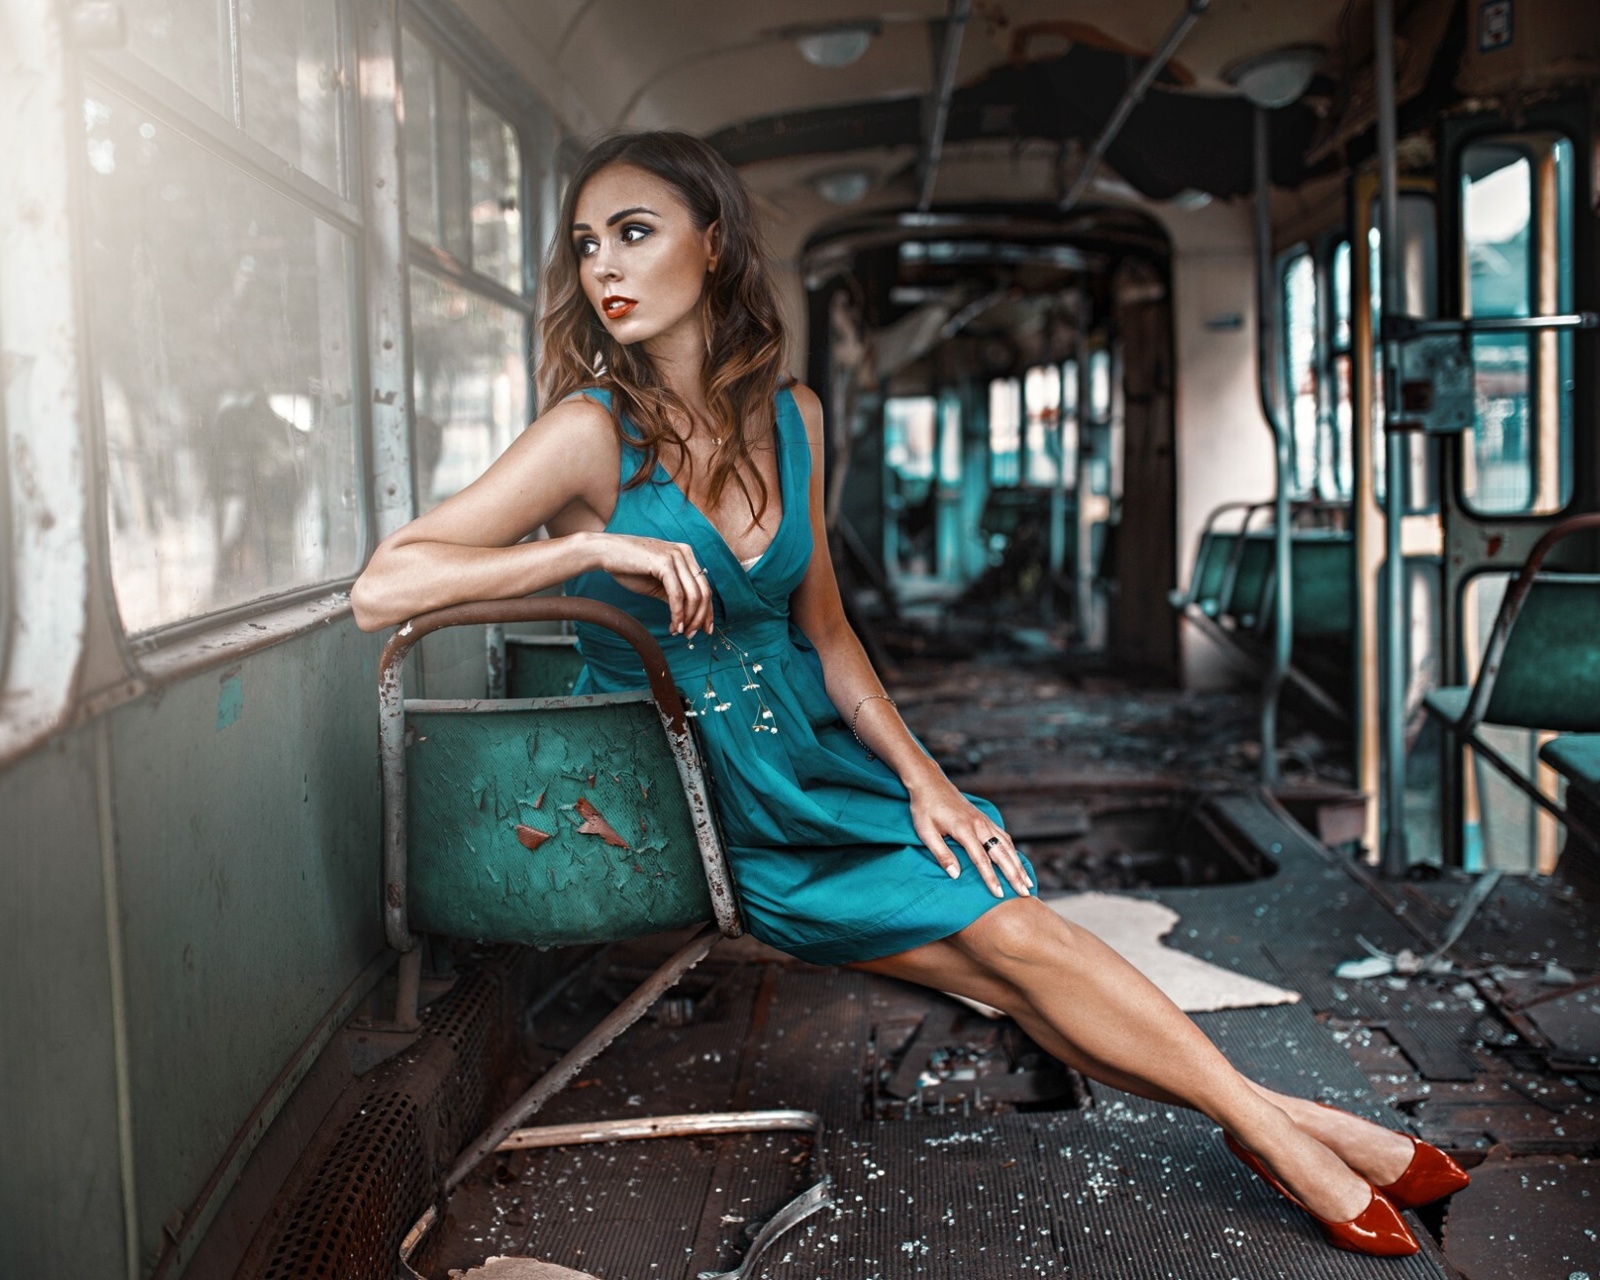 Обои Girl in abandoned train 1600x1280